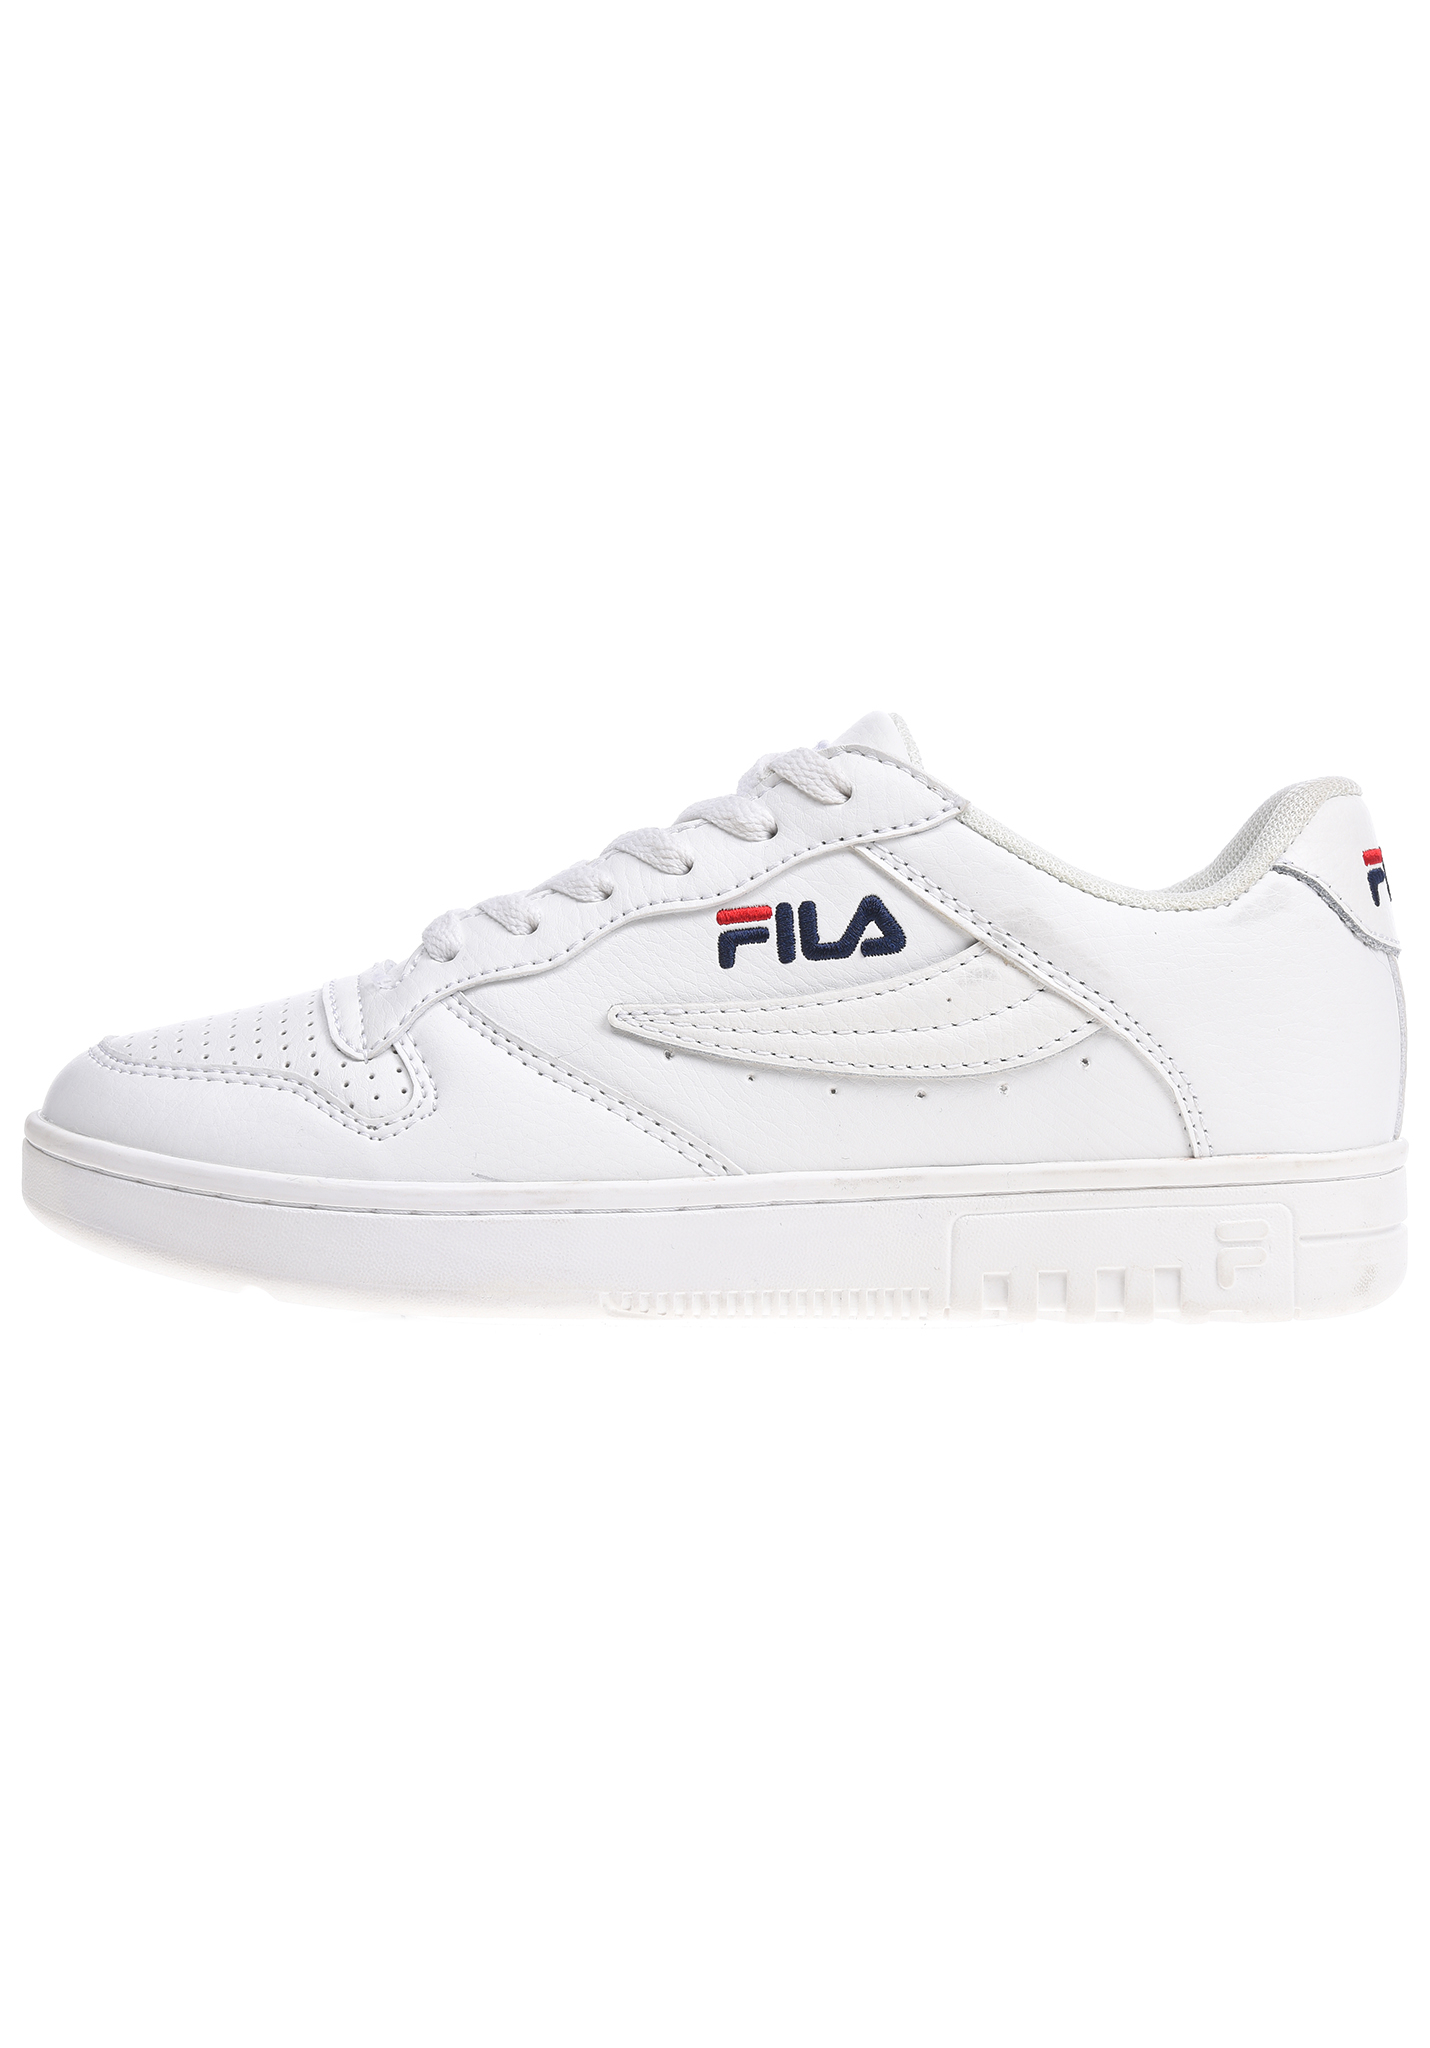 Fila FX100 Low Sneaker weiß 43